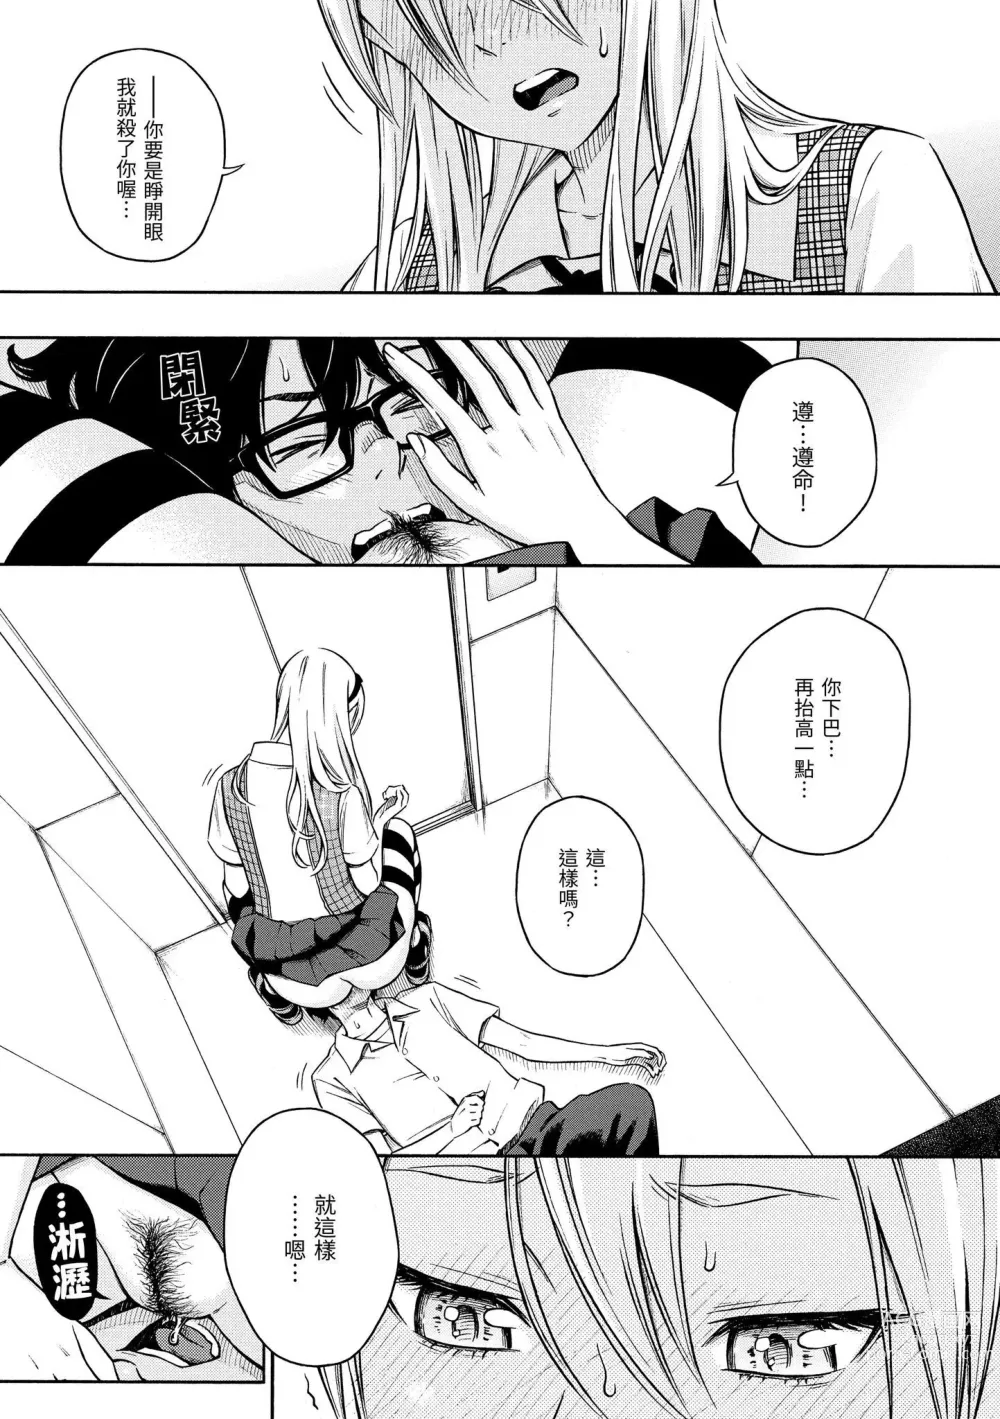 Page 6 of manga 放學後的香草女孩 (decensored)